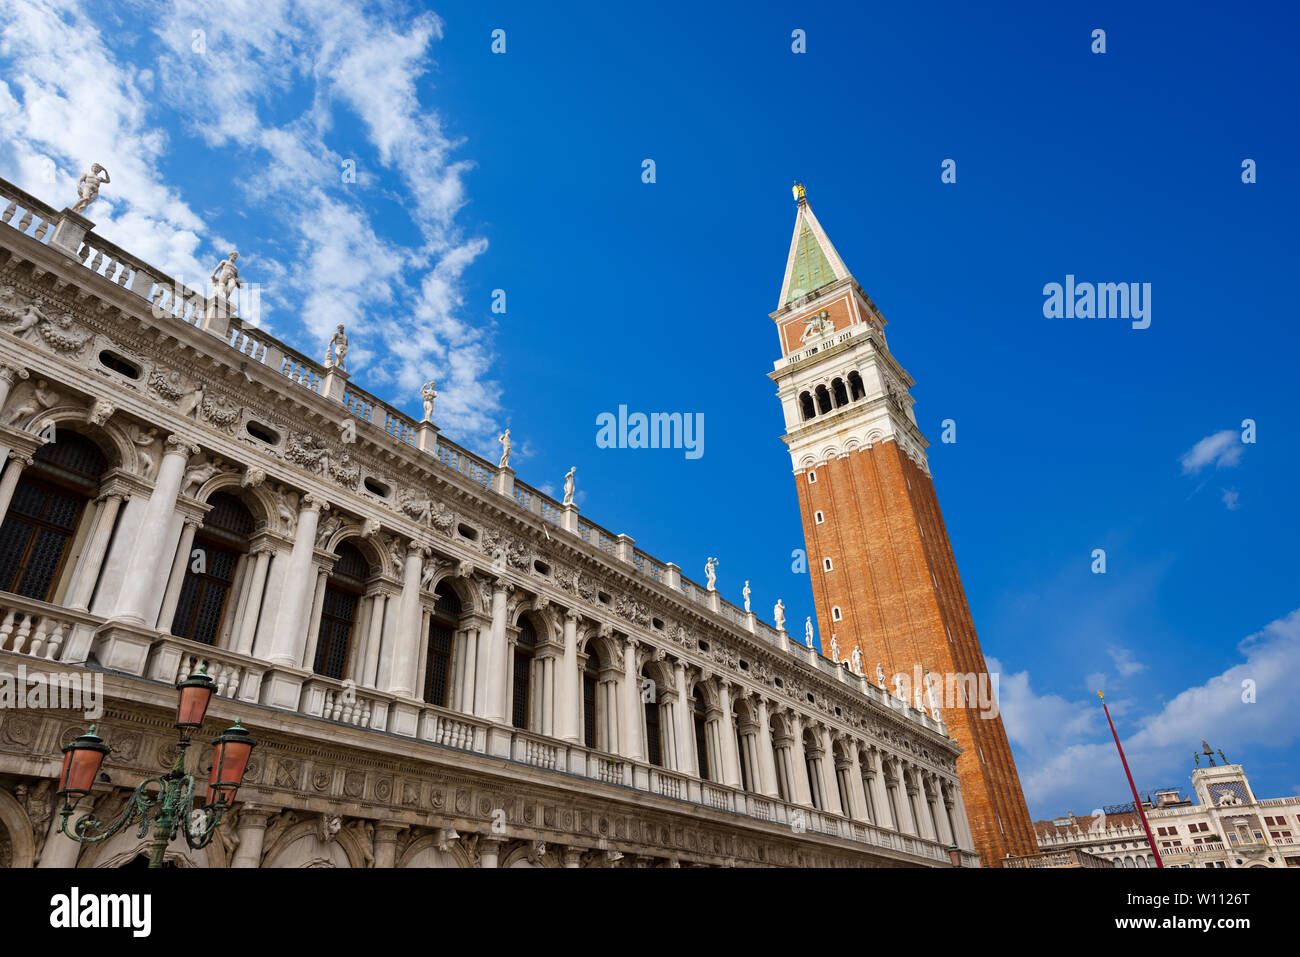 Le palais de la Bibliothèque Nationale Marciana et clocher de Saint Marc sur la Piazza San Marco (St. Mark Square) dans la ville de Venezia, Venise, Italie Banque D'Images